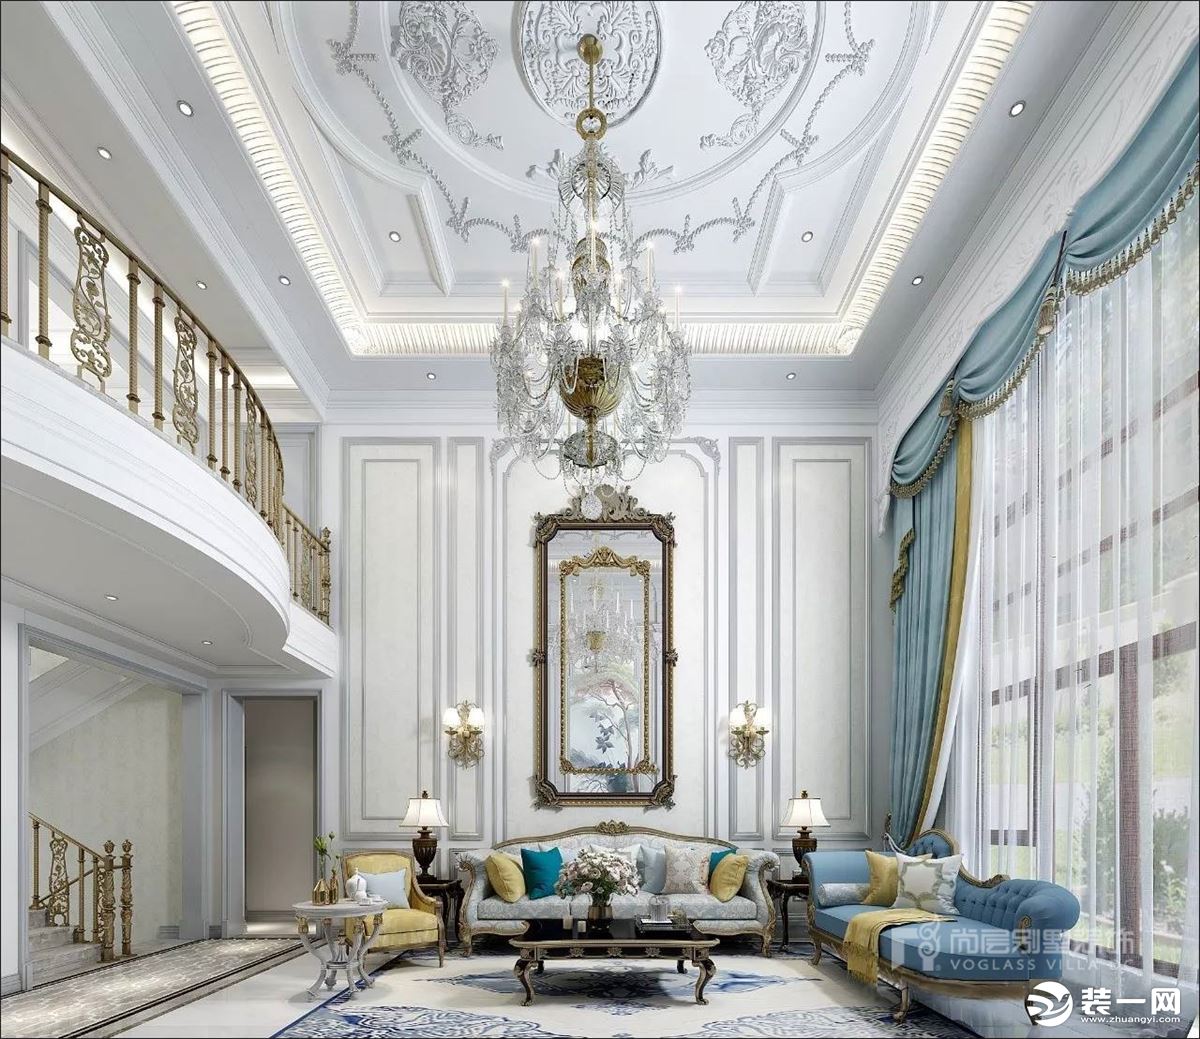 深圳尚层装饰580平米法式风格别墅案例--客厅